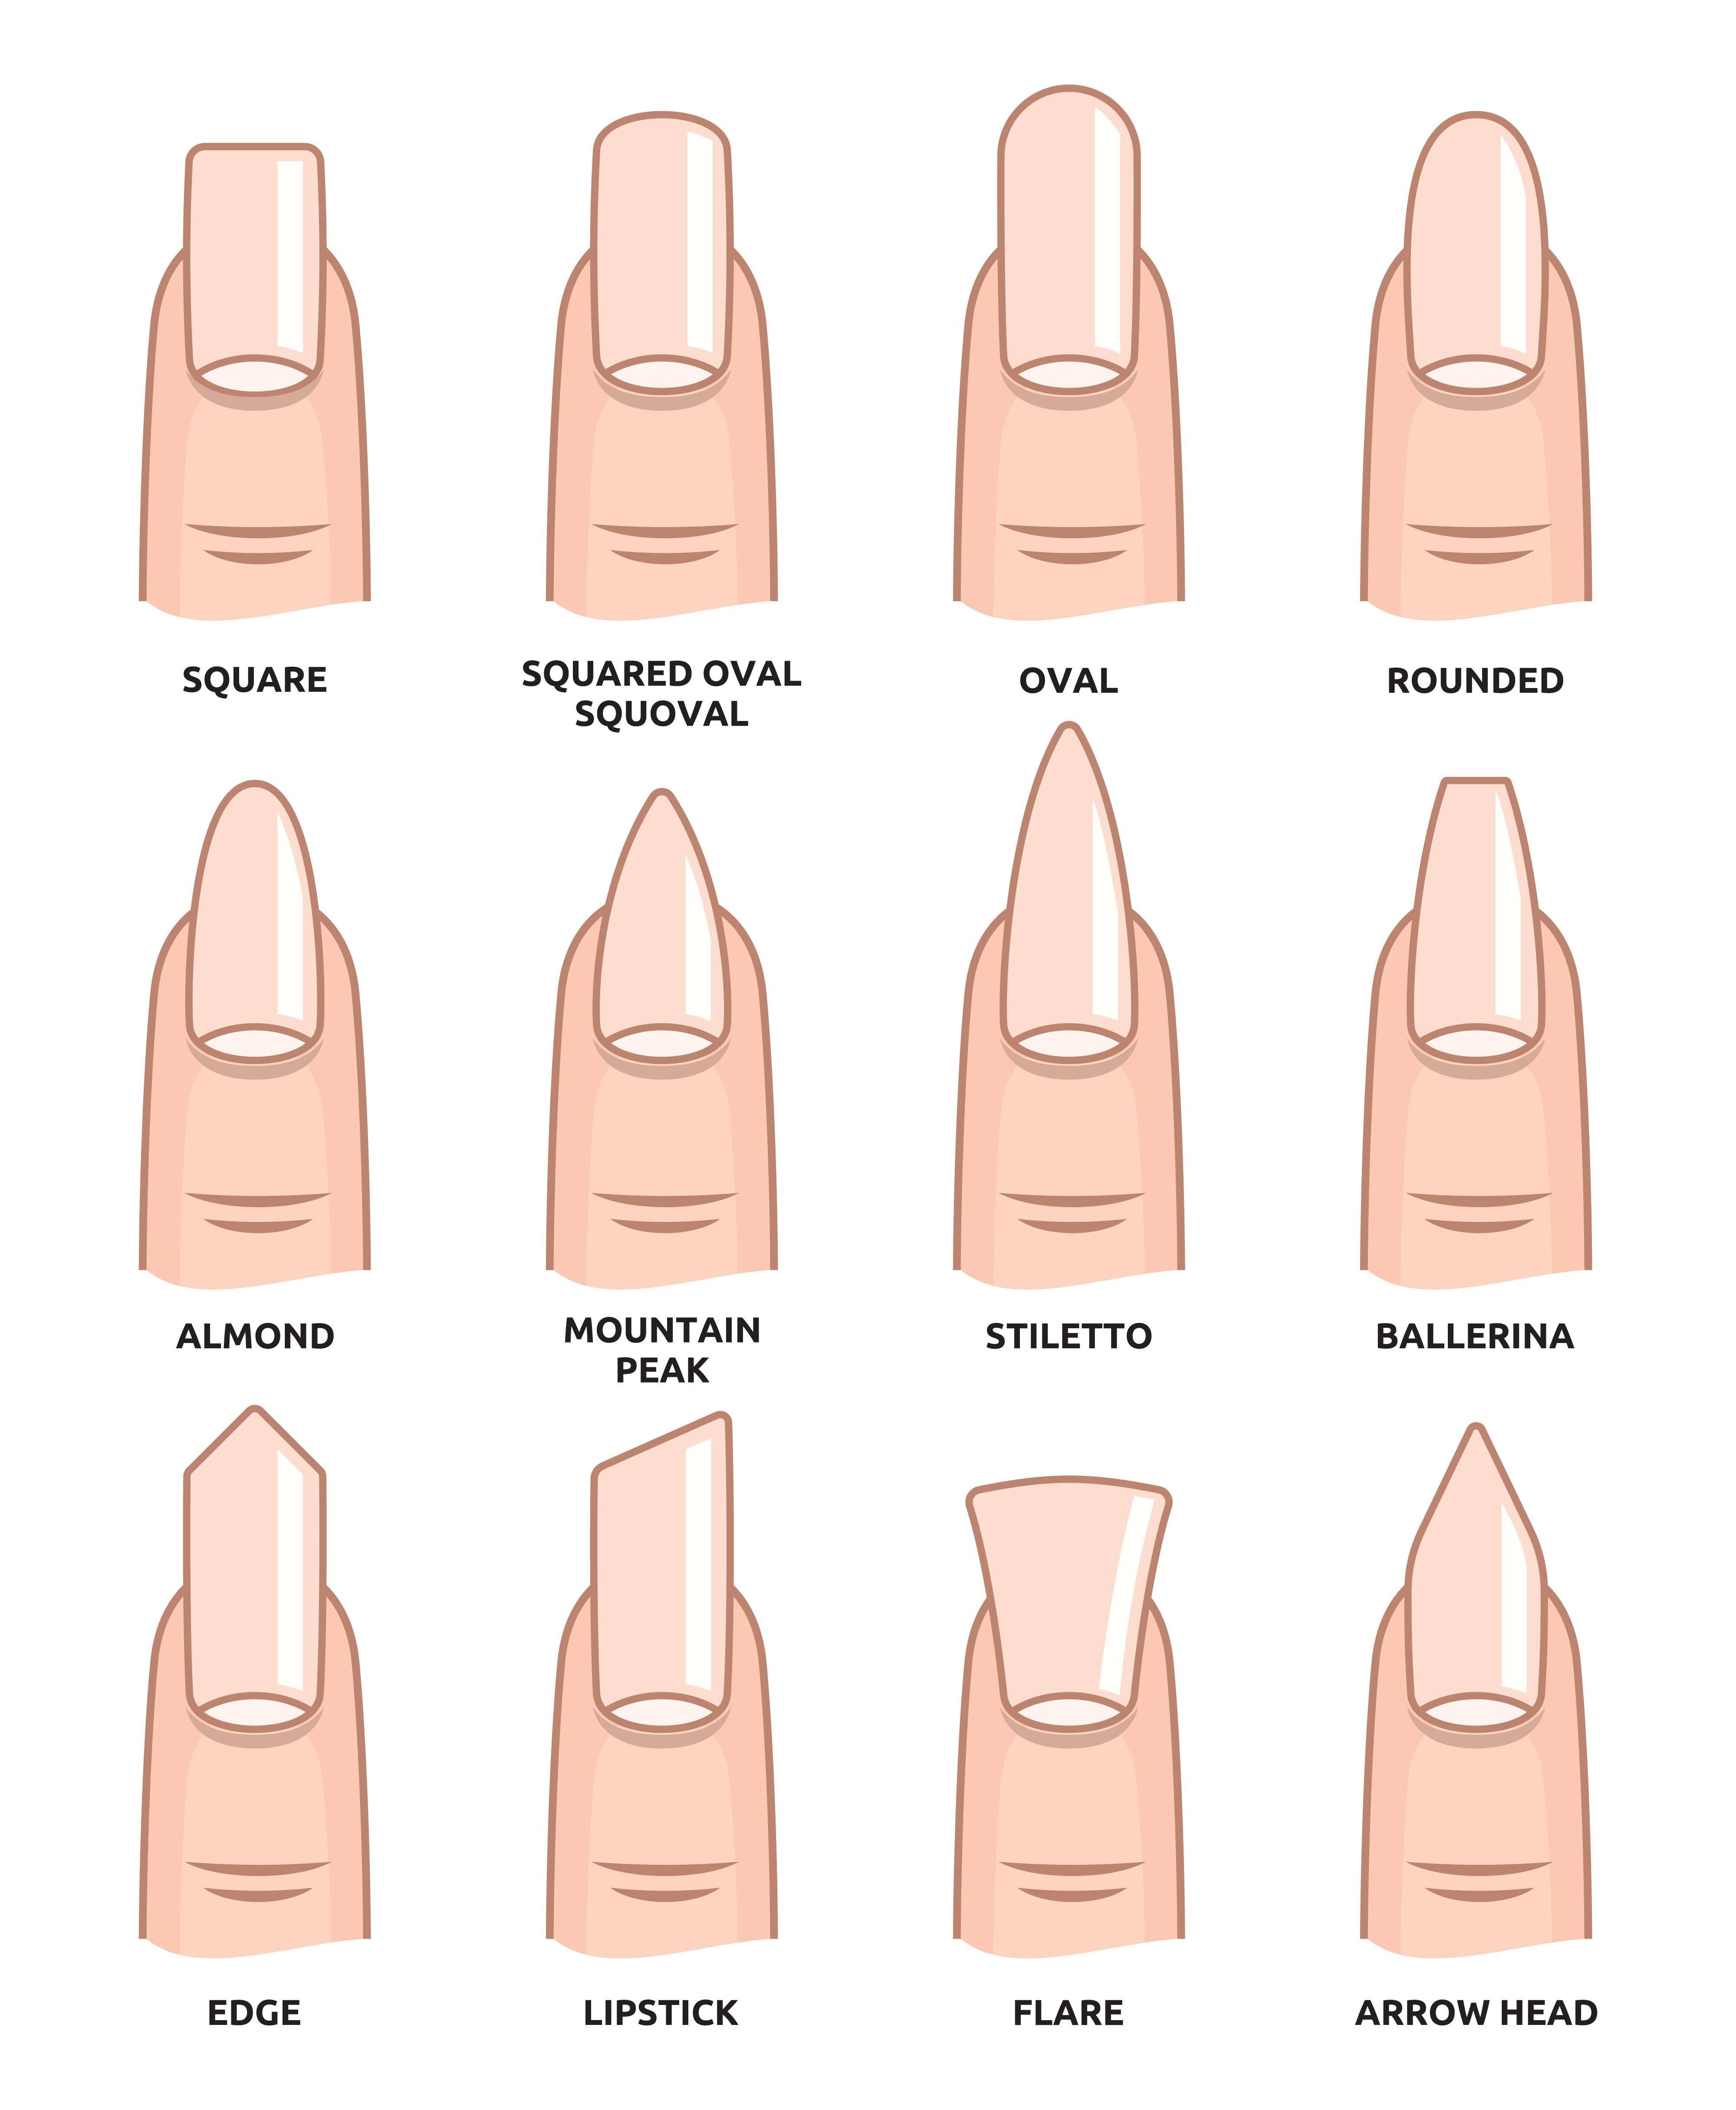 ᐉ выбираем форму ногтя правильно! тонкости маникюра: какая форма ногтей для каких пальцев подходит ➡ klass511.ru